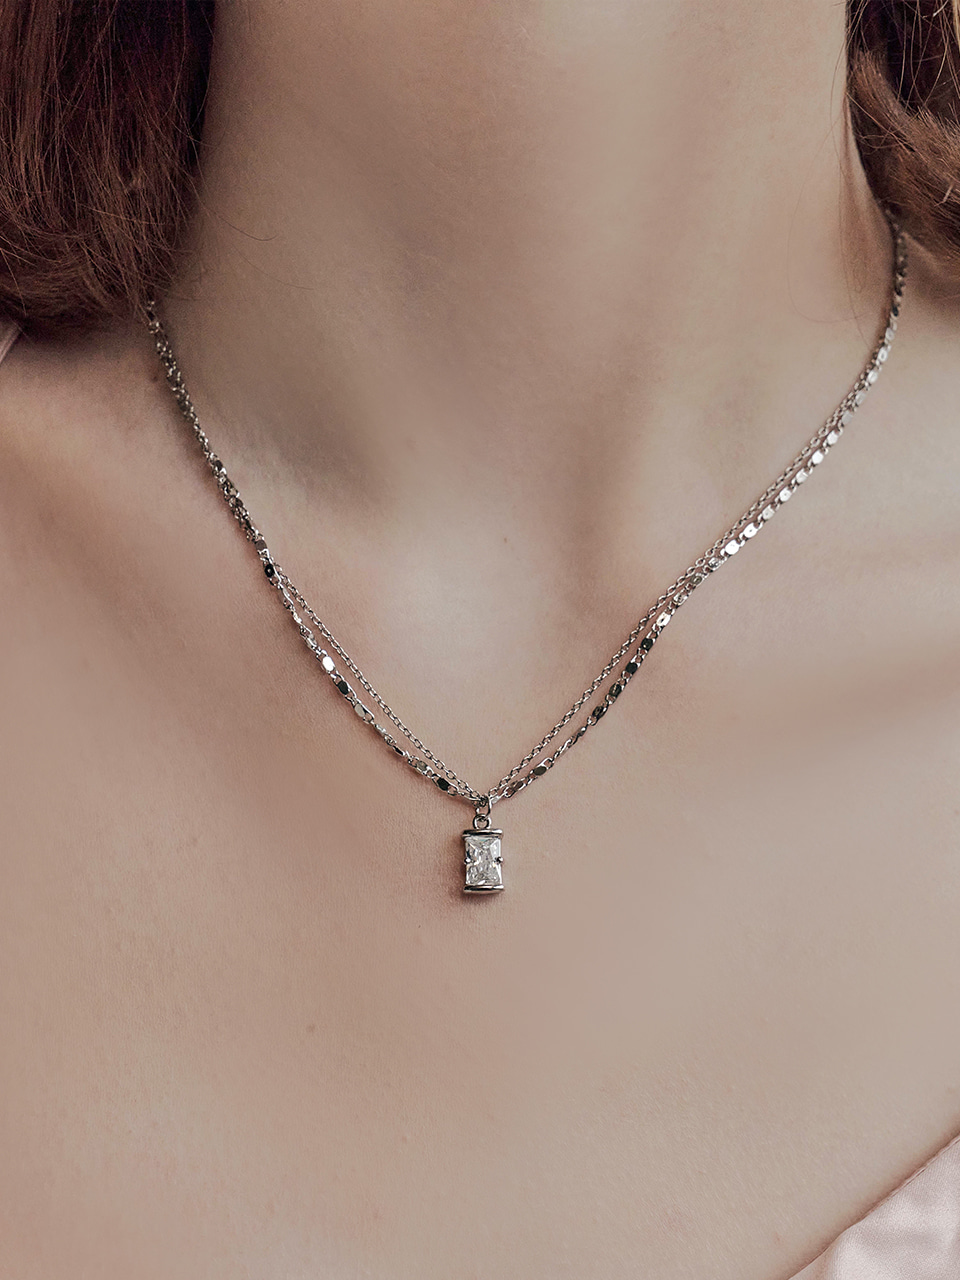 [최강창민 착용] ellen cubic necklace